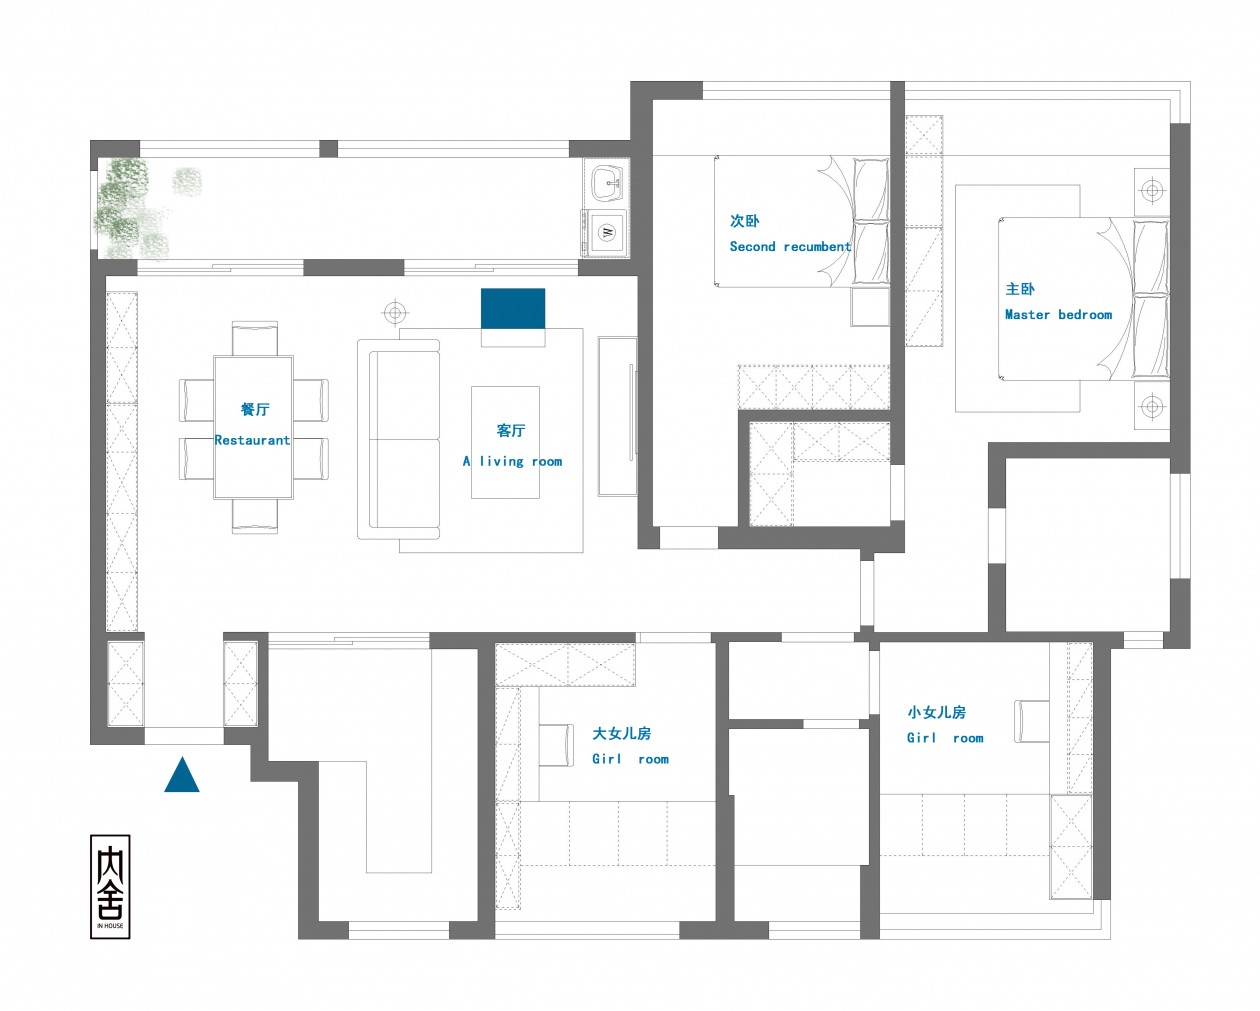 128现代四房装修效果图,给父母精装的居住空间装修案例效果图-美广网(图1)